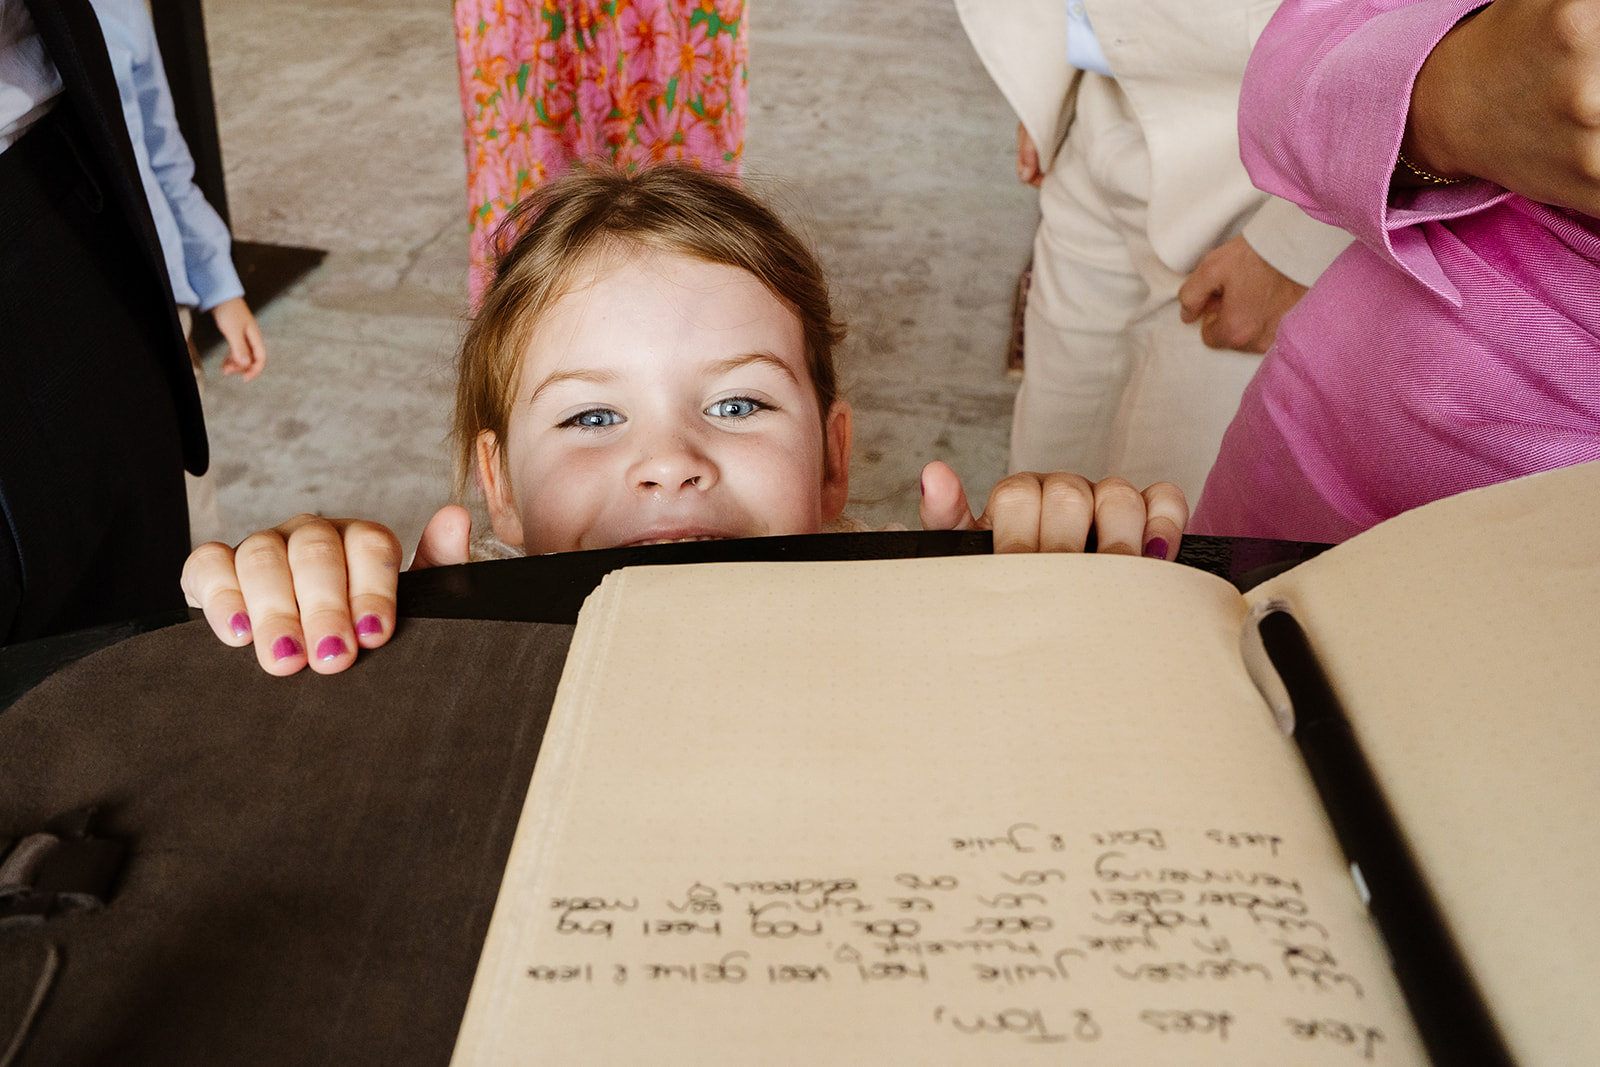 Trouwen bij Tapijn Maastricht - Grappige foto van kind en gastenboek